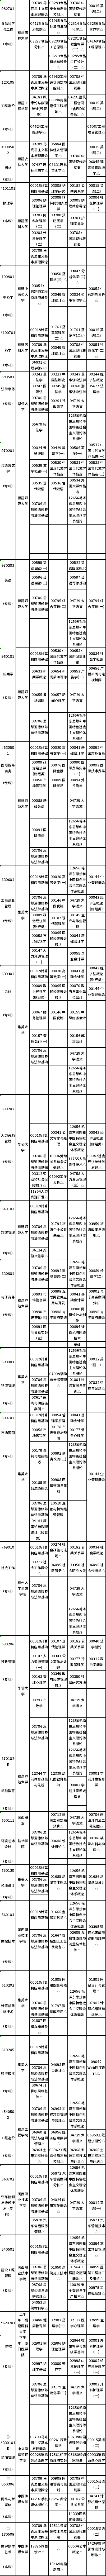 福建省2022年10月自考开考专业理论课程考试时间安排表